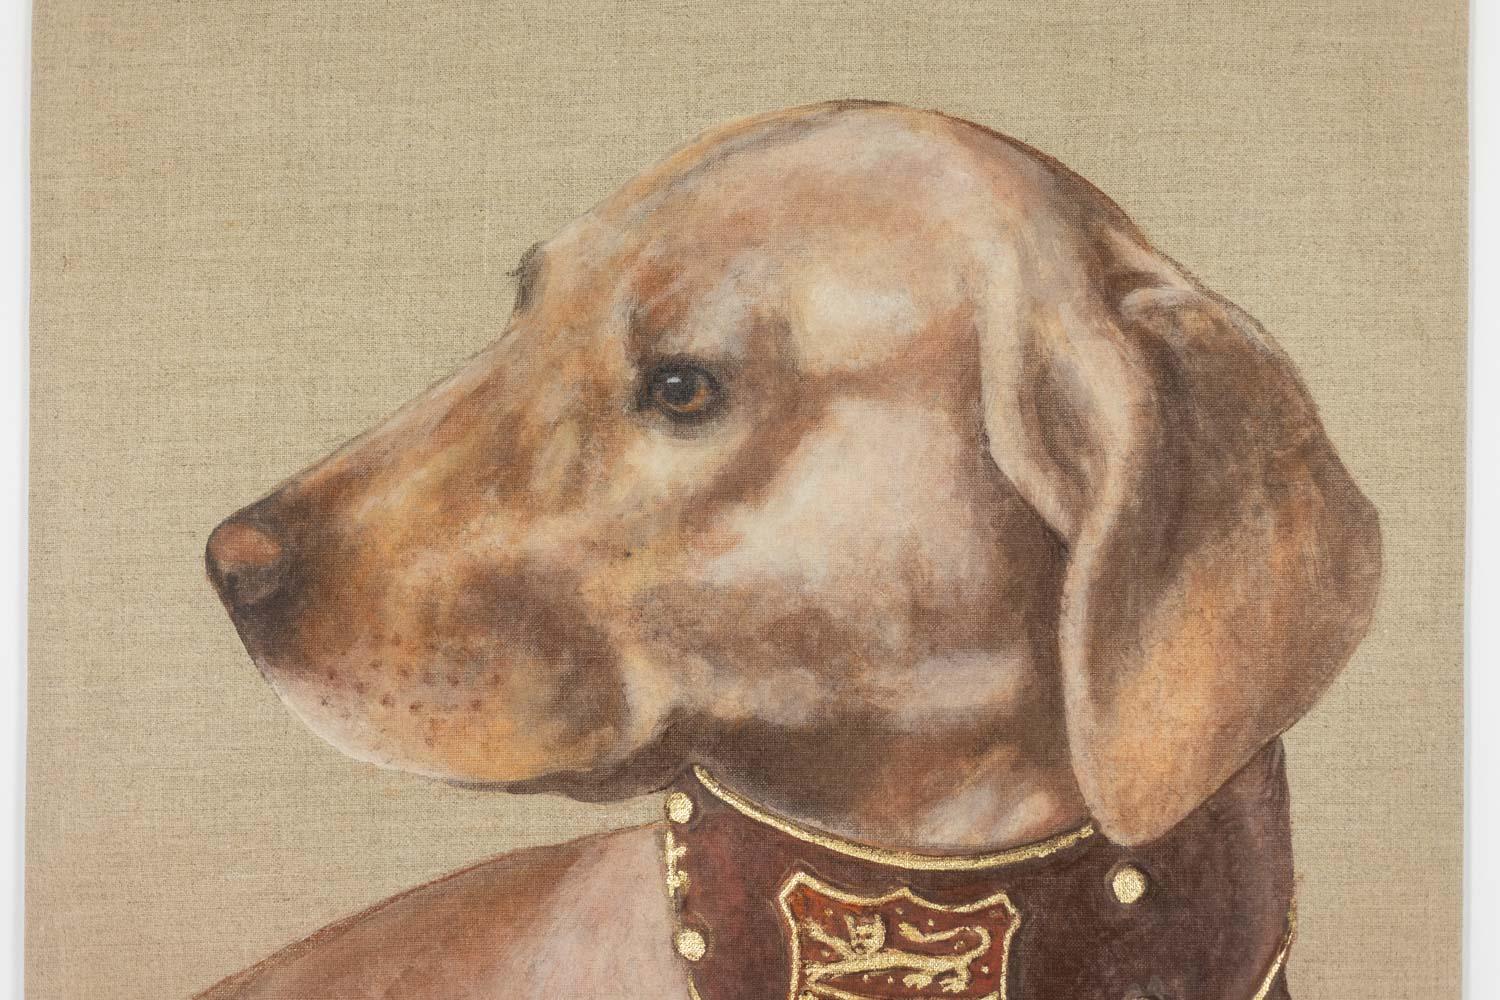 Gemalte Leinwand oder dekorative Tafel, die einen Hund darstellt, dessen Halsband mit einem Wappen in Schokoladen- und Goldtönen verziert ist.

Zeitgenössische Werke von französischen Künstlern.

Referenz: LS5989456Y